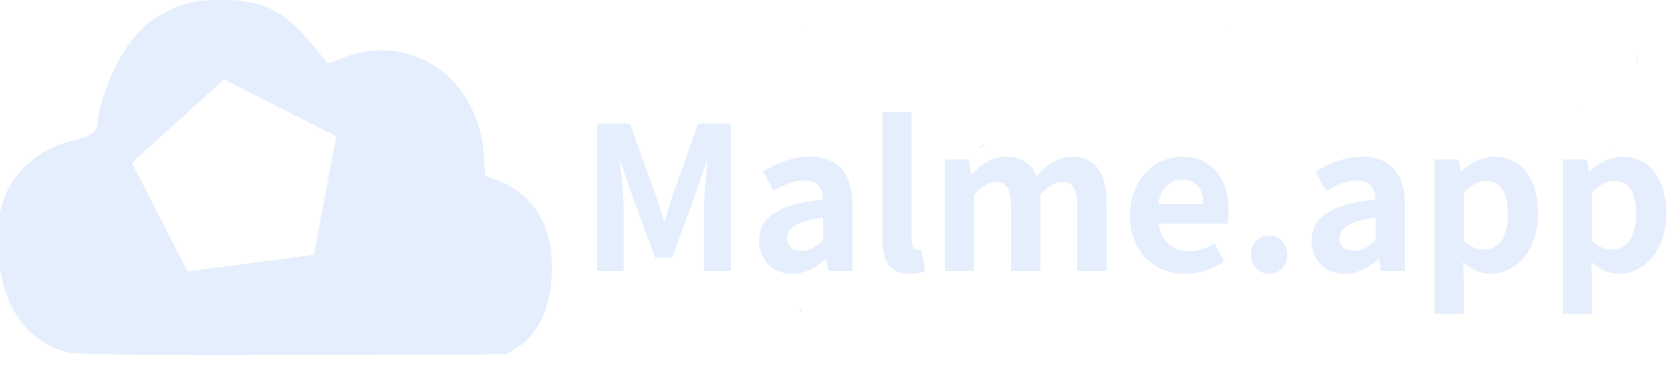 malme.app